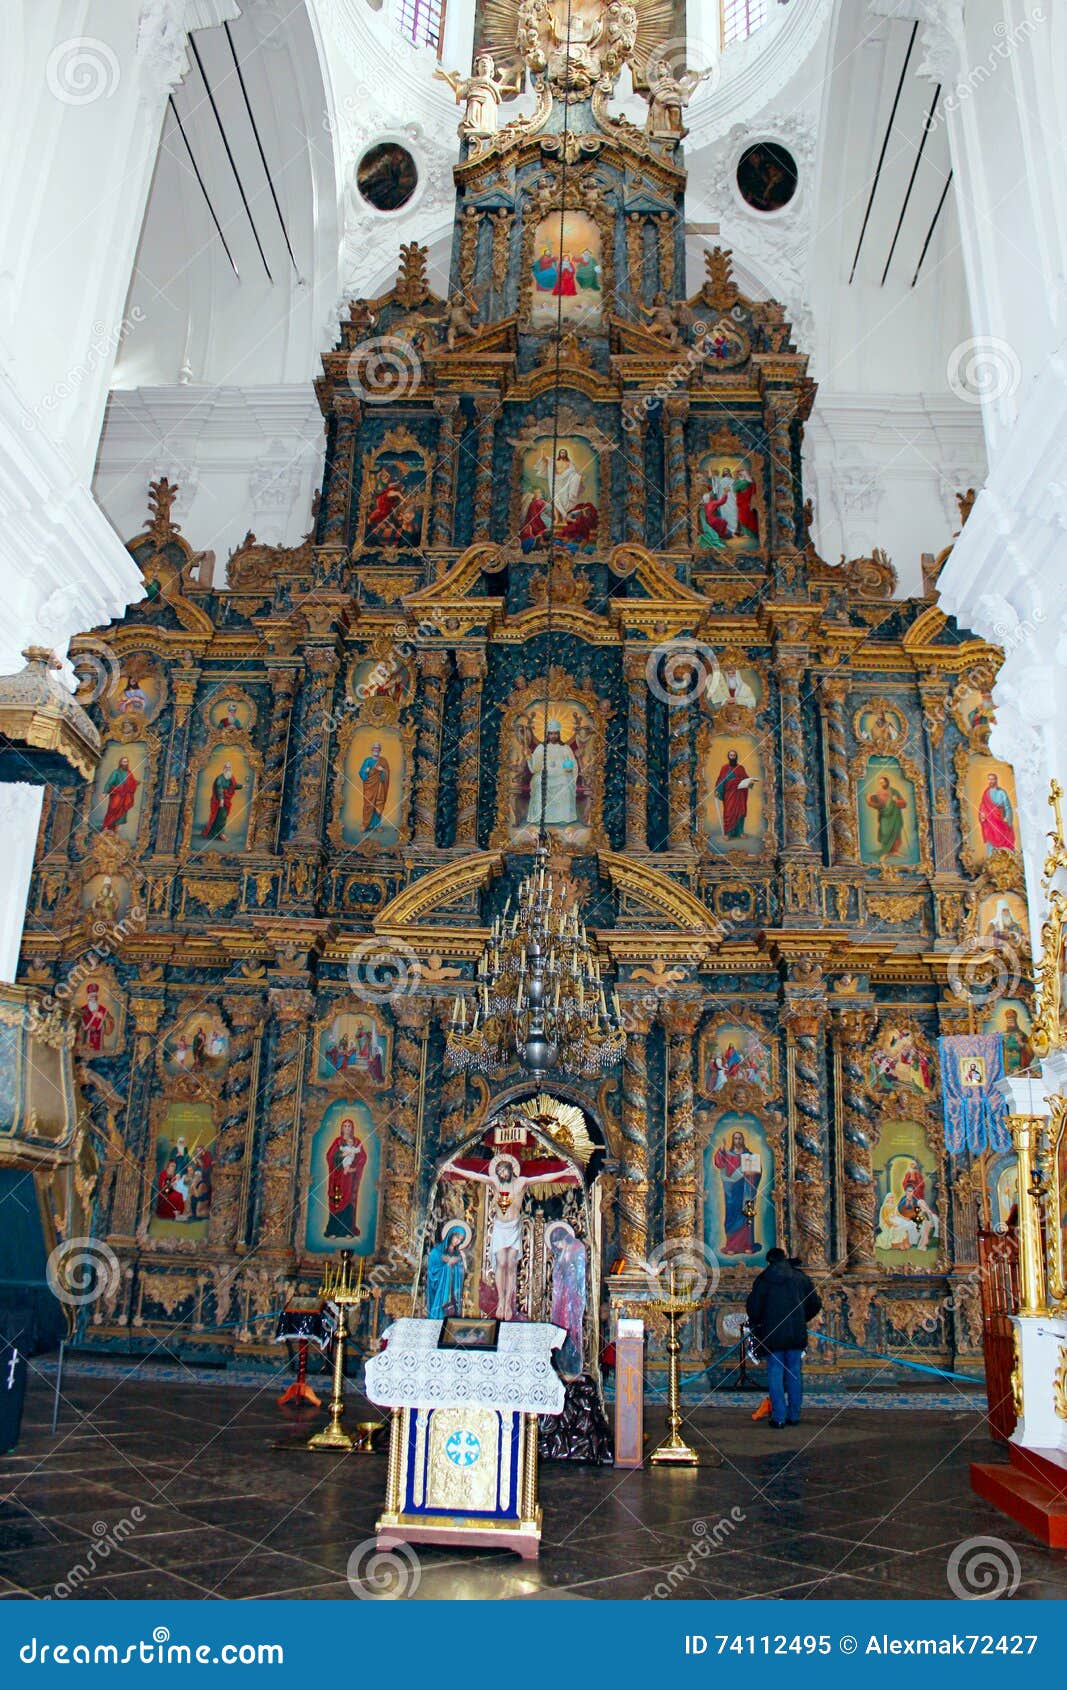 Les gens dans l'église près de la belle iconostase avec les icônes antiques ont placé dans le cadre en bois Oeuvre d'art religieuse dans l'église